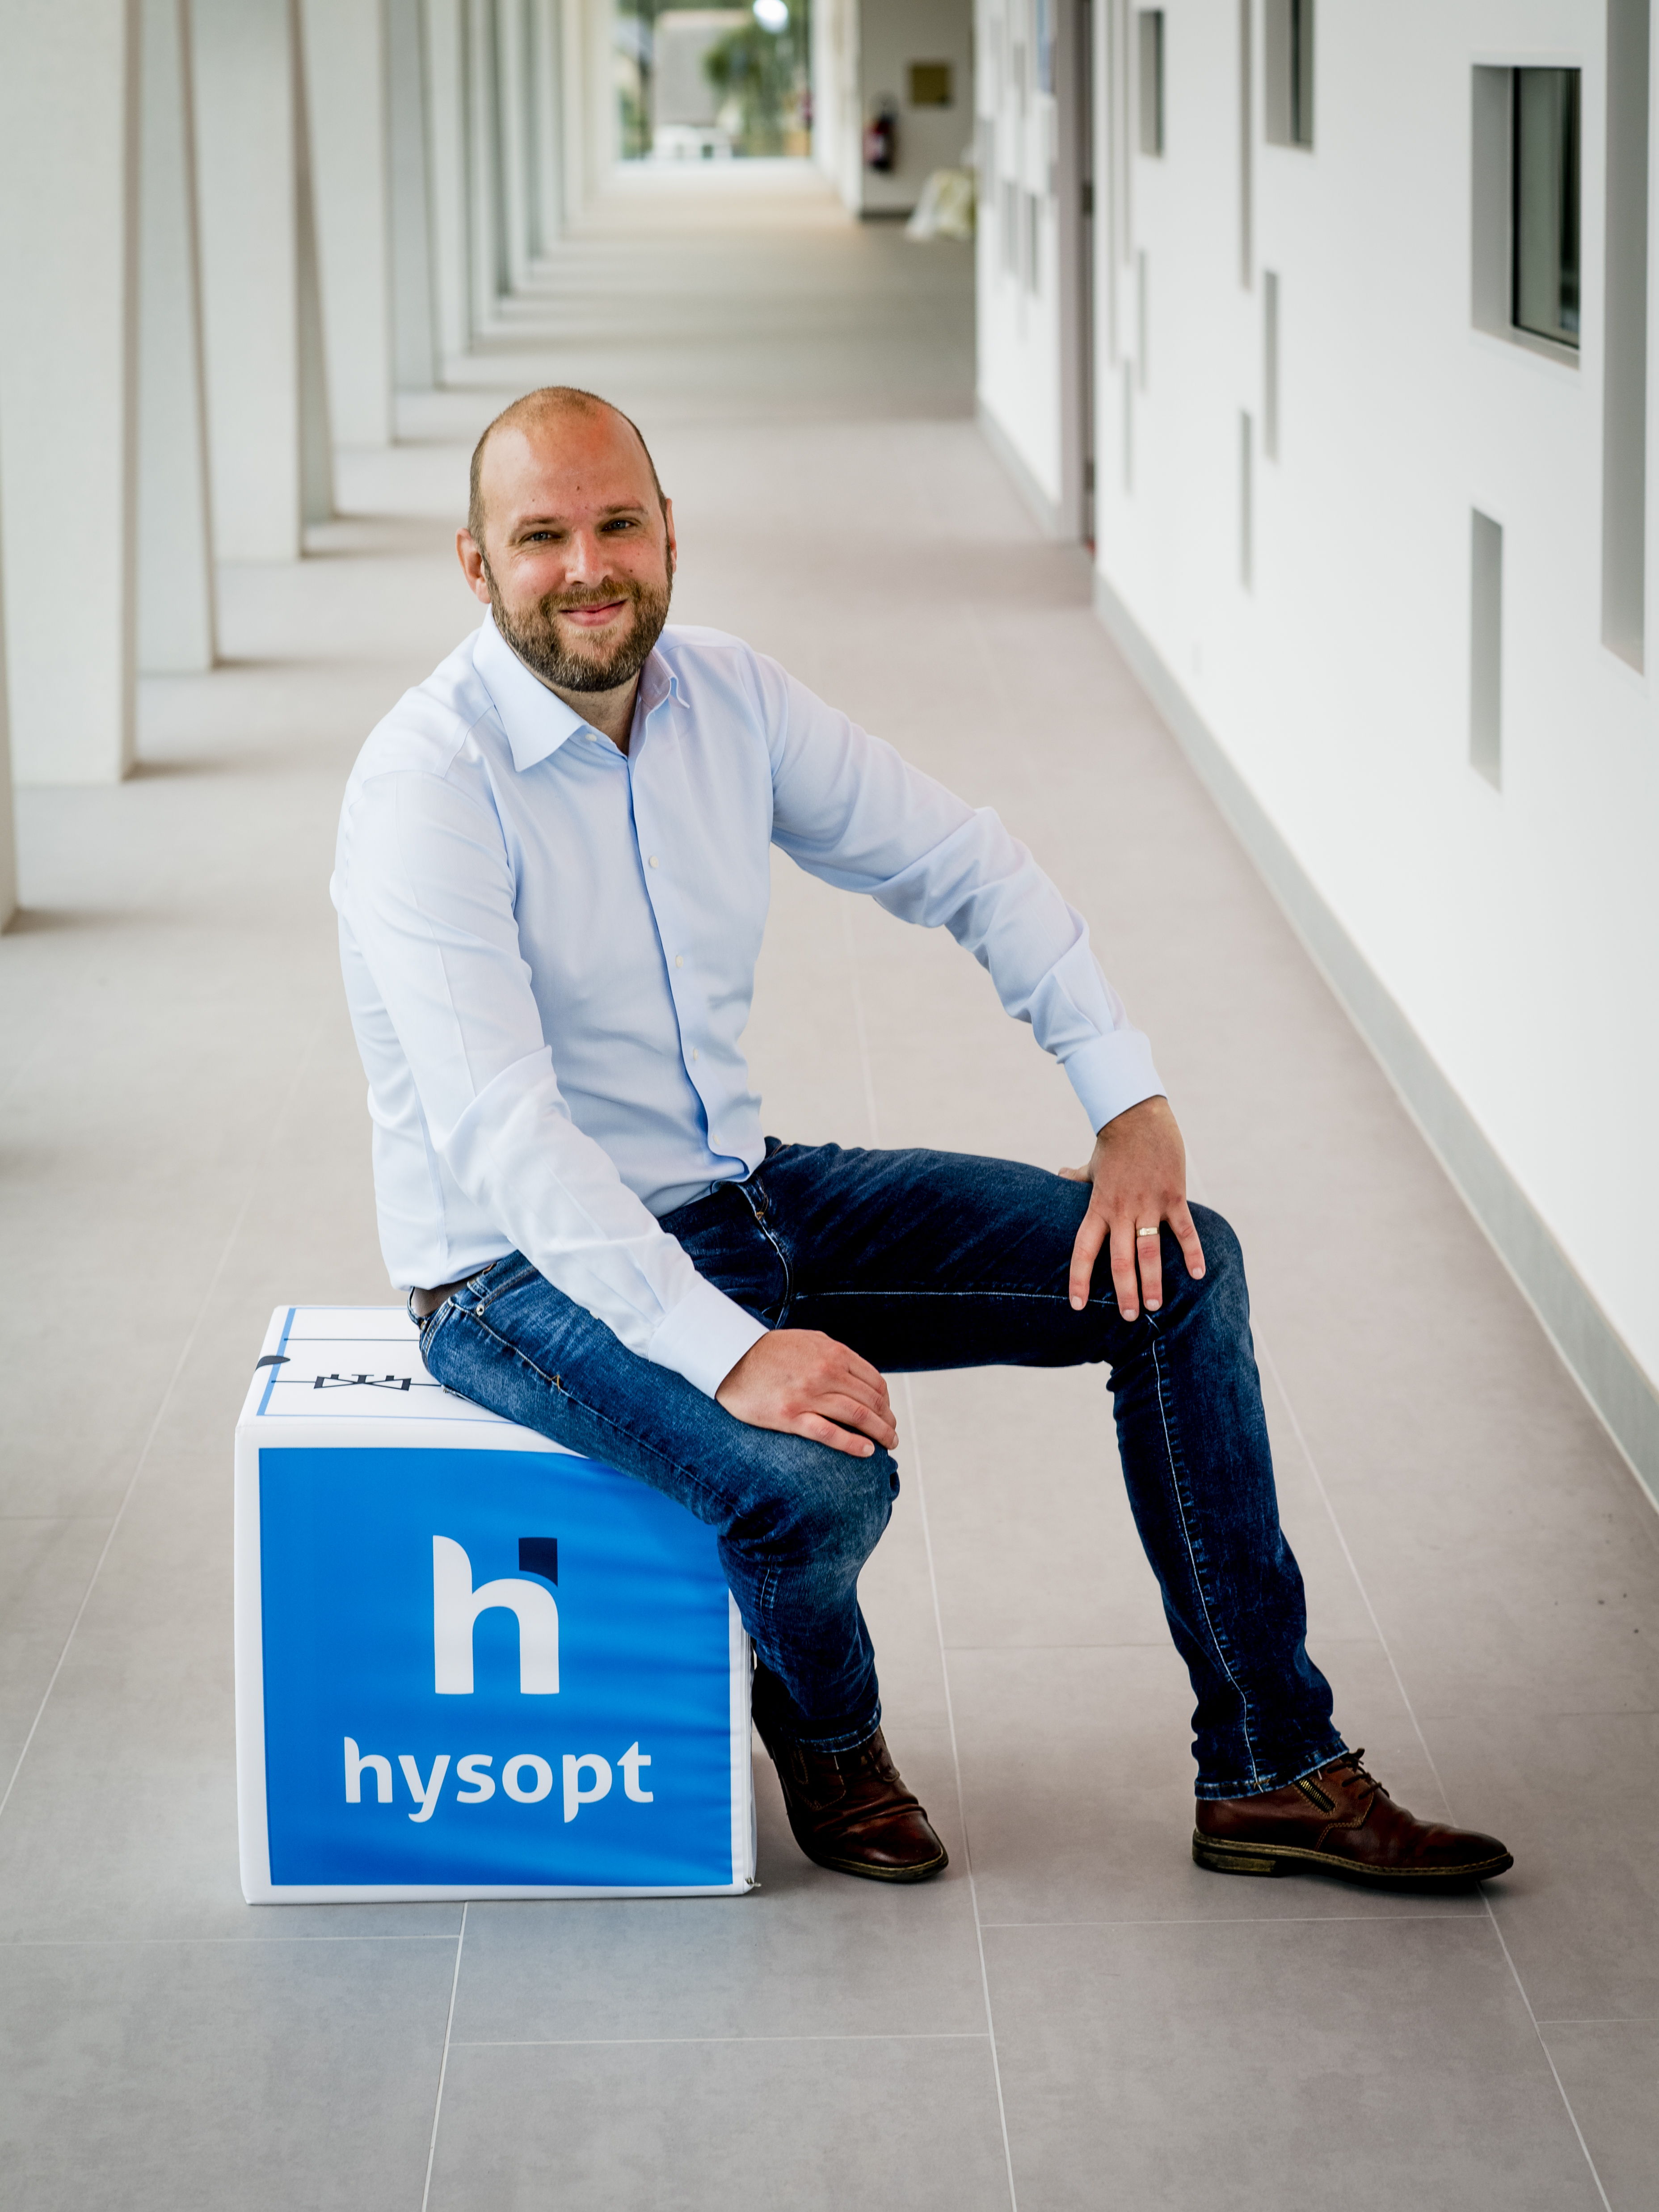 Hysopt, den belgiske pioner og globale teknologileder inden for HVAC-optimering, vil officielt lancere sin Hysopt BIM syncer© under et gratis webinar torsdag den 29. juni.